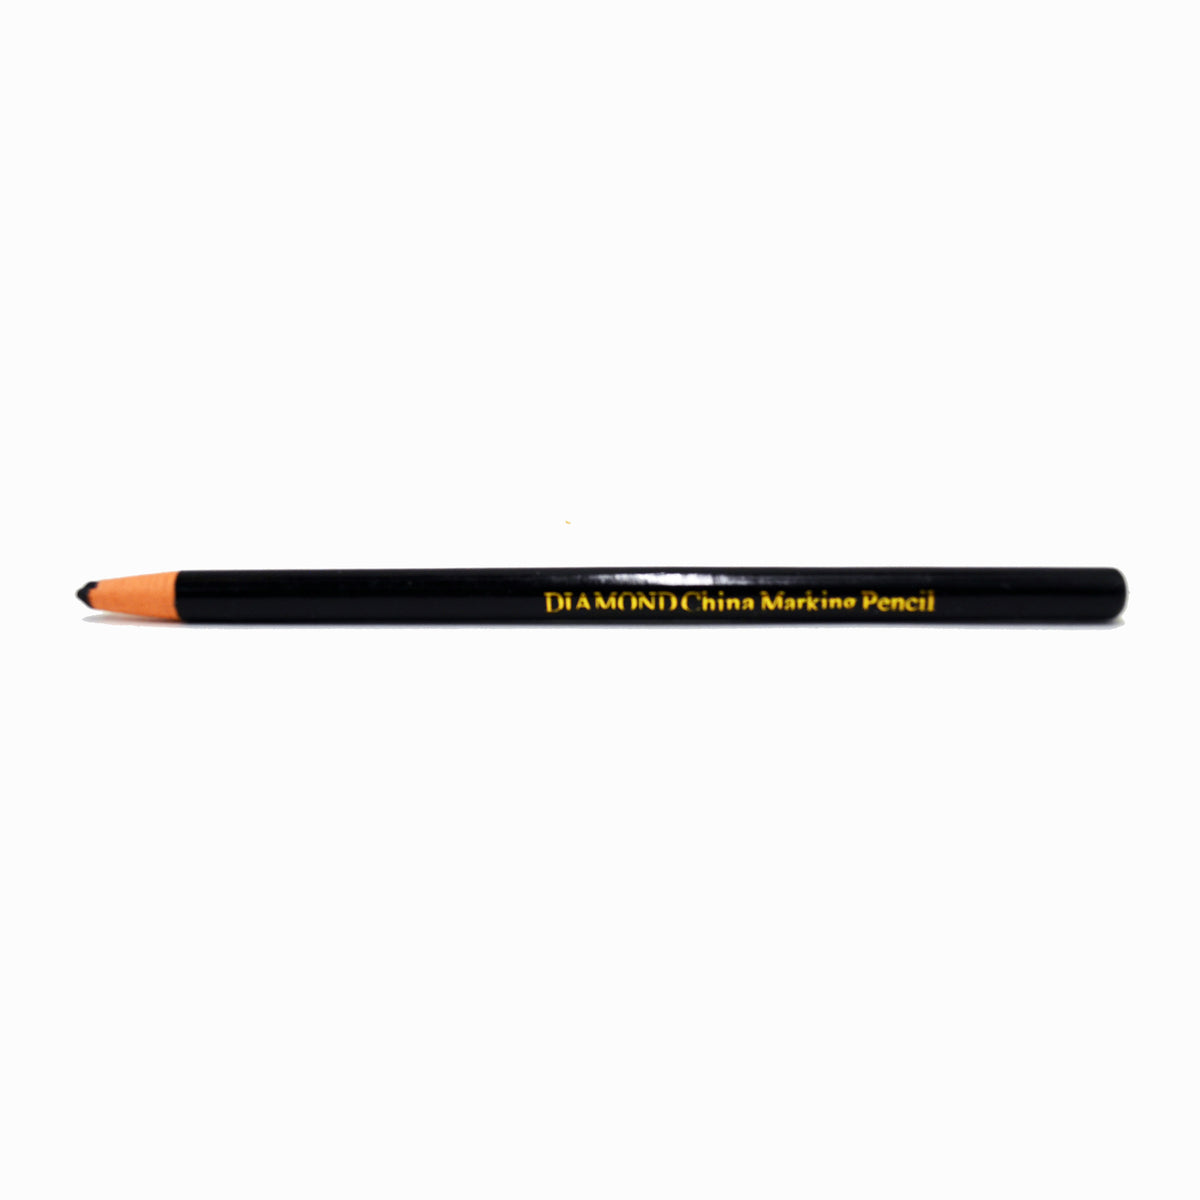 Diamond China Marking Pencil - 12-pk – Panda Int'l Trading of NY, Inc